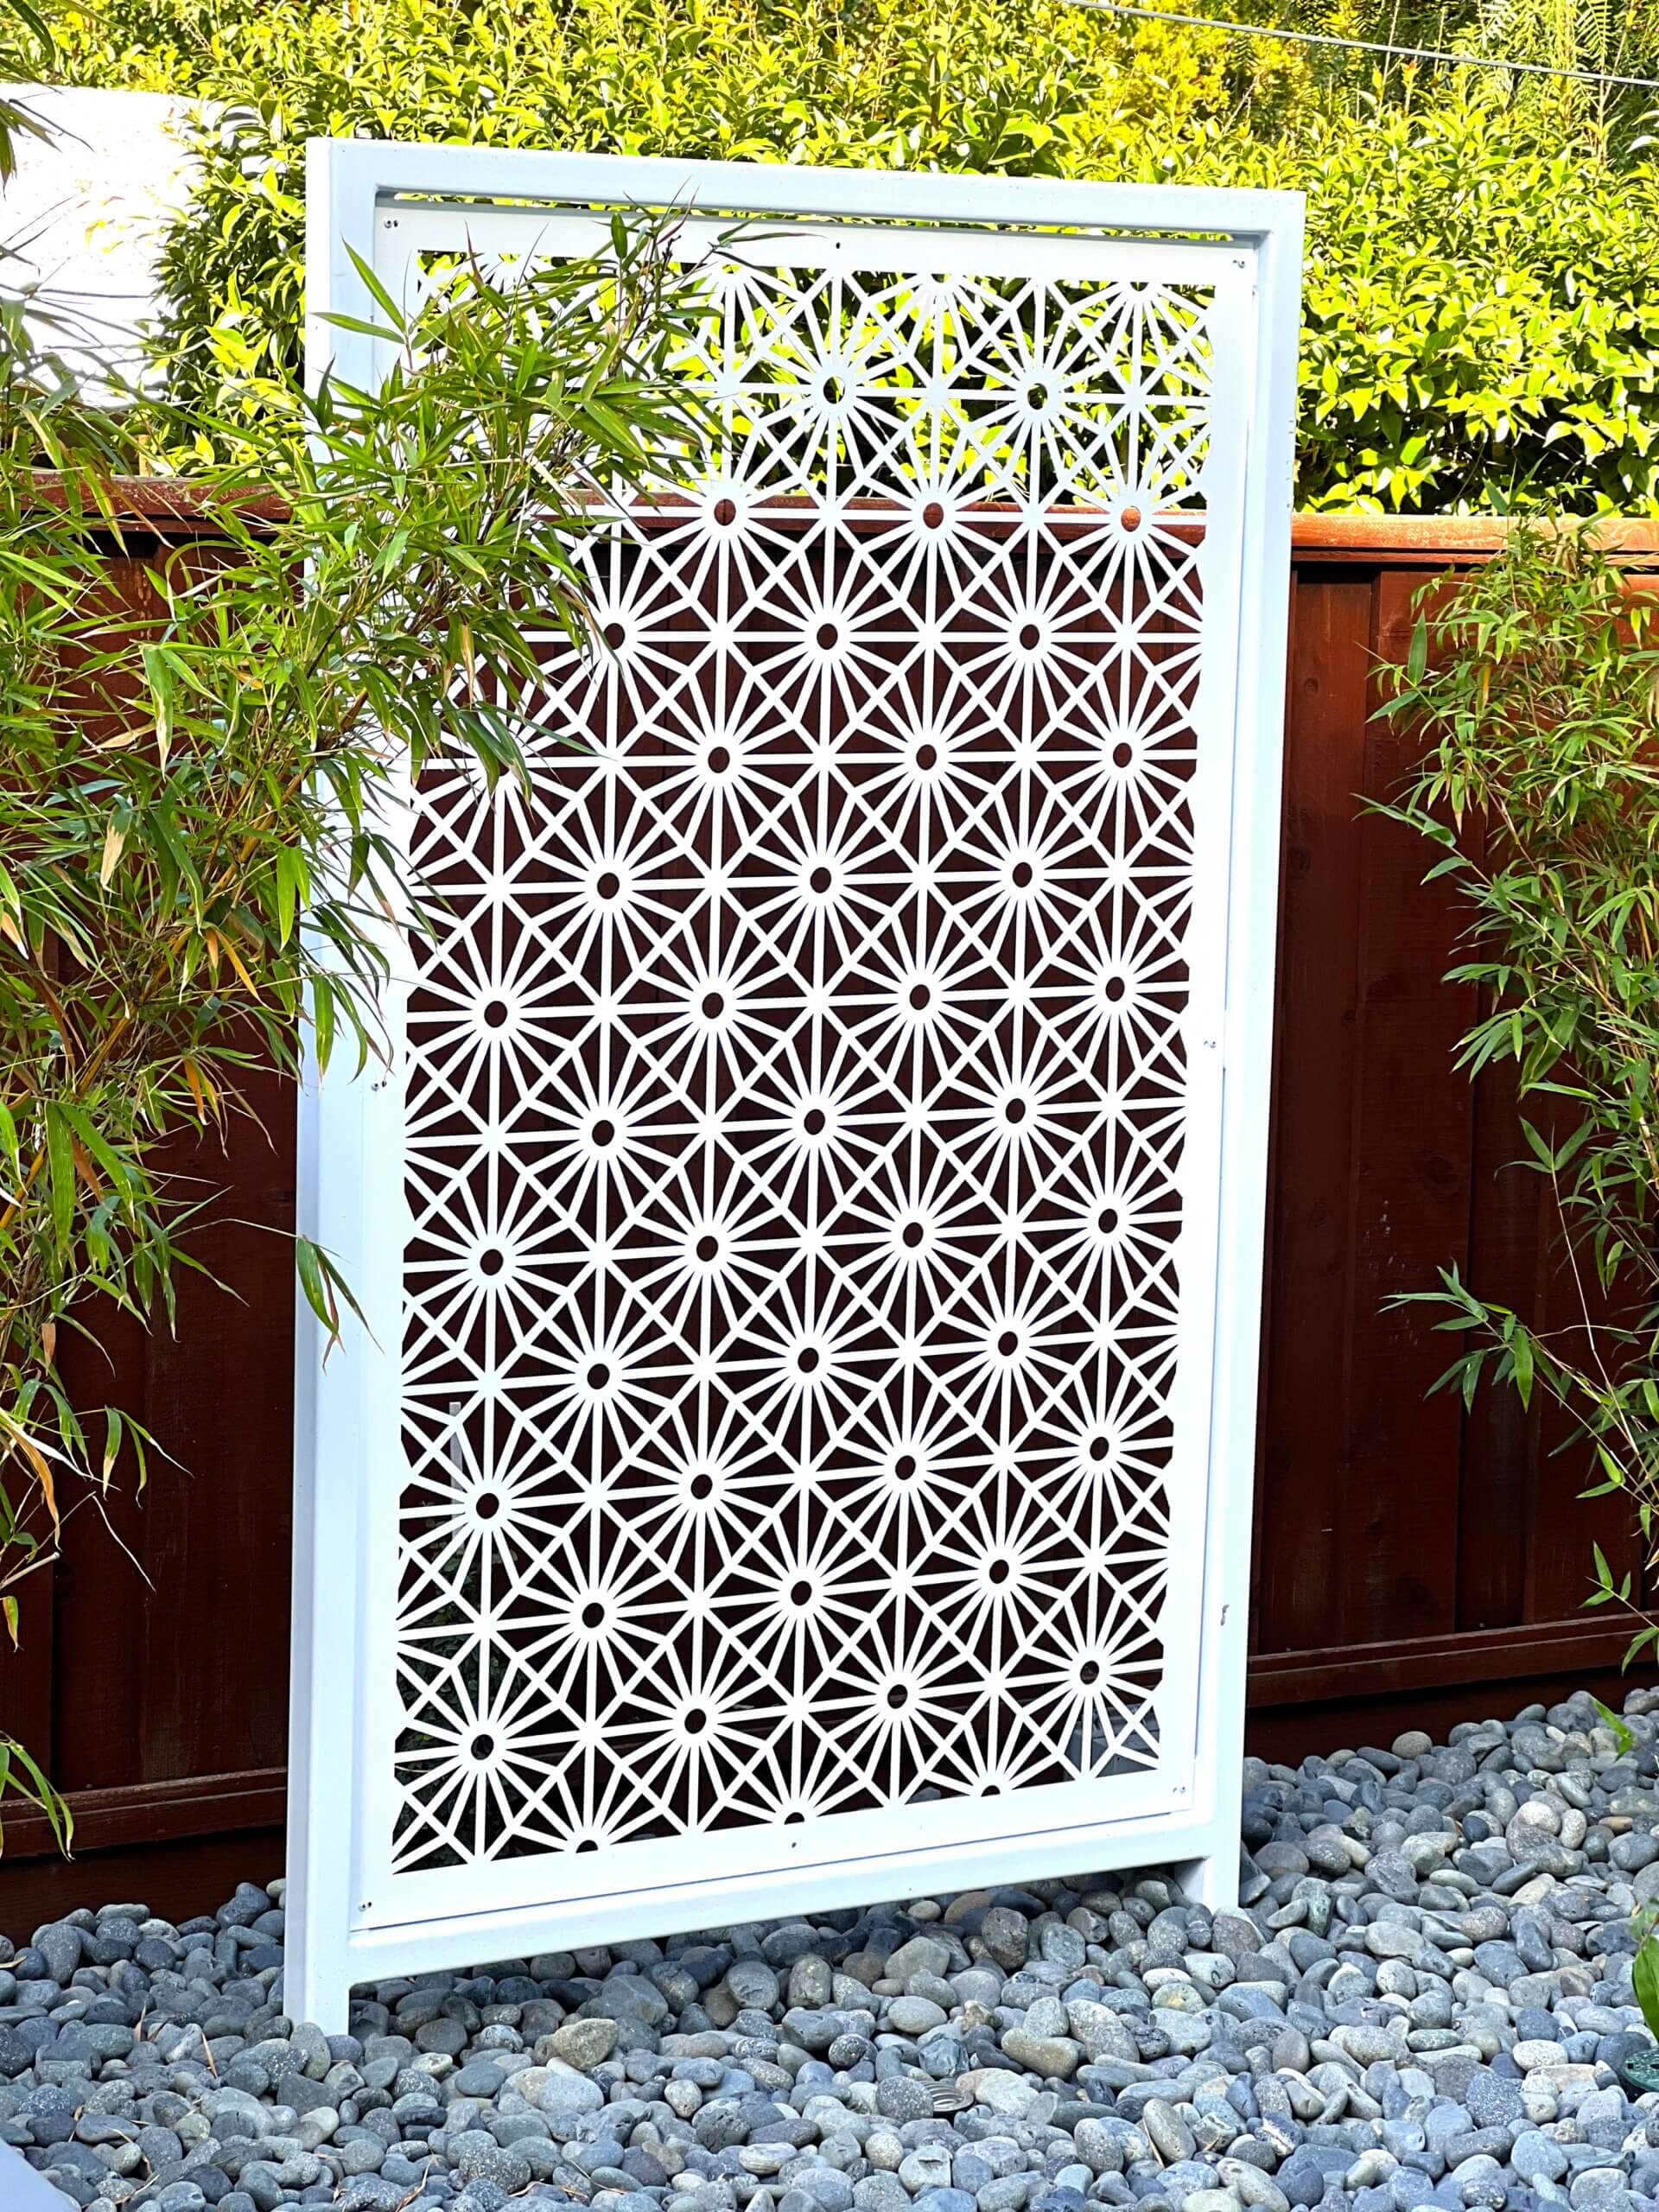 White custom engineered metal backyard screen providing interest in Eichler home landscape remodel